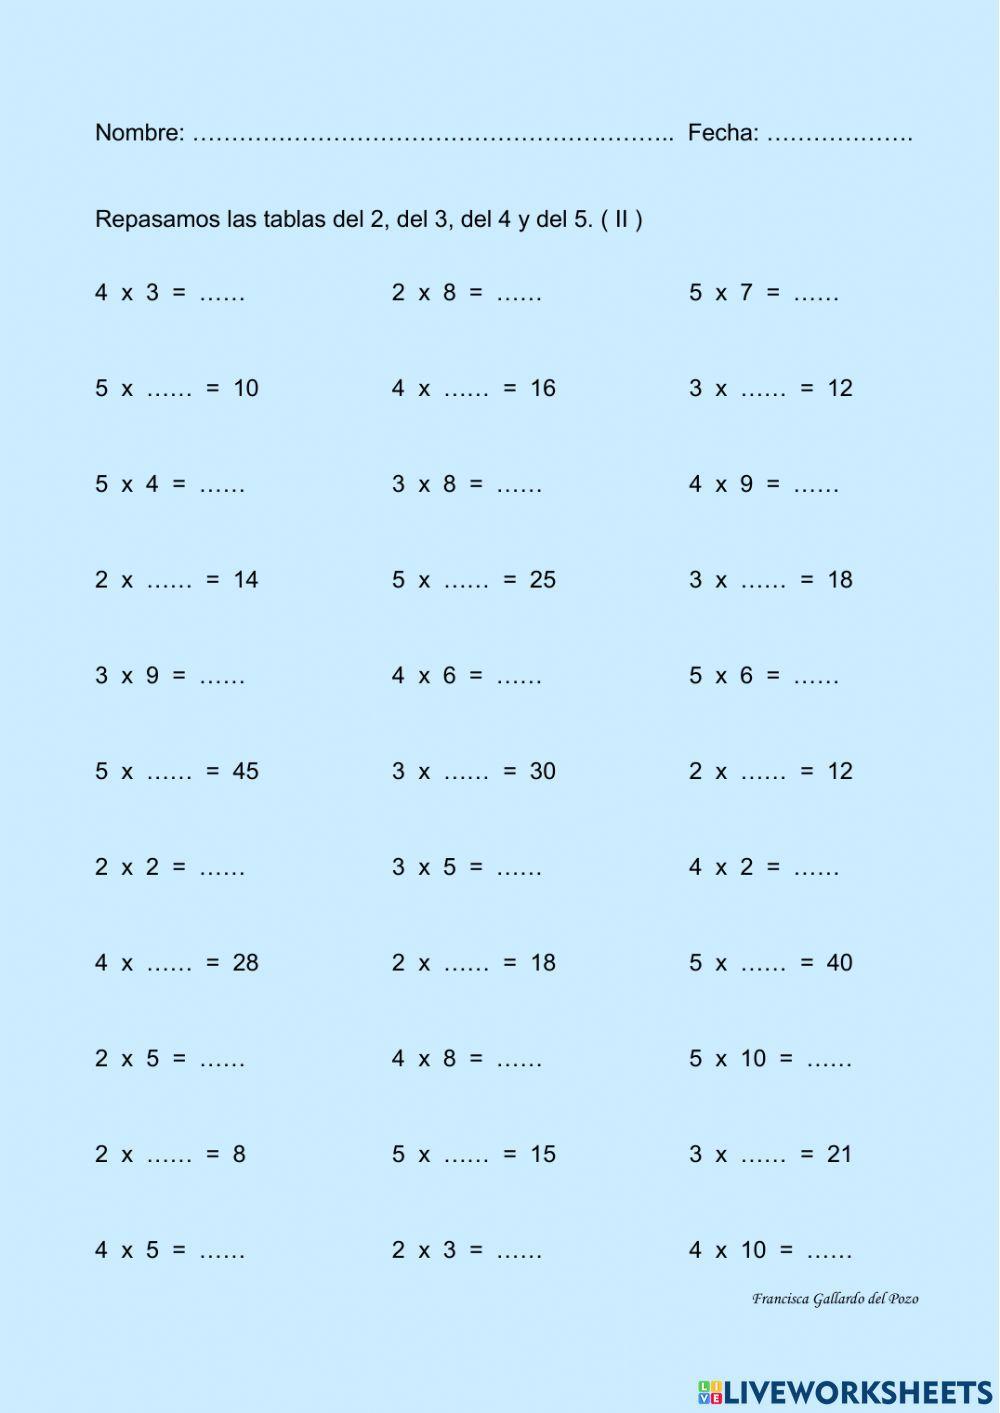 Repaso las tablas del 2 al 5 (II)